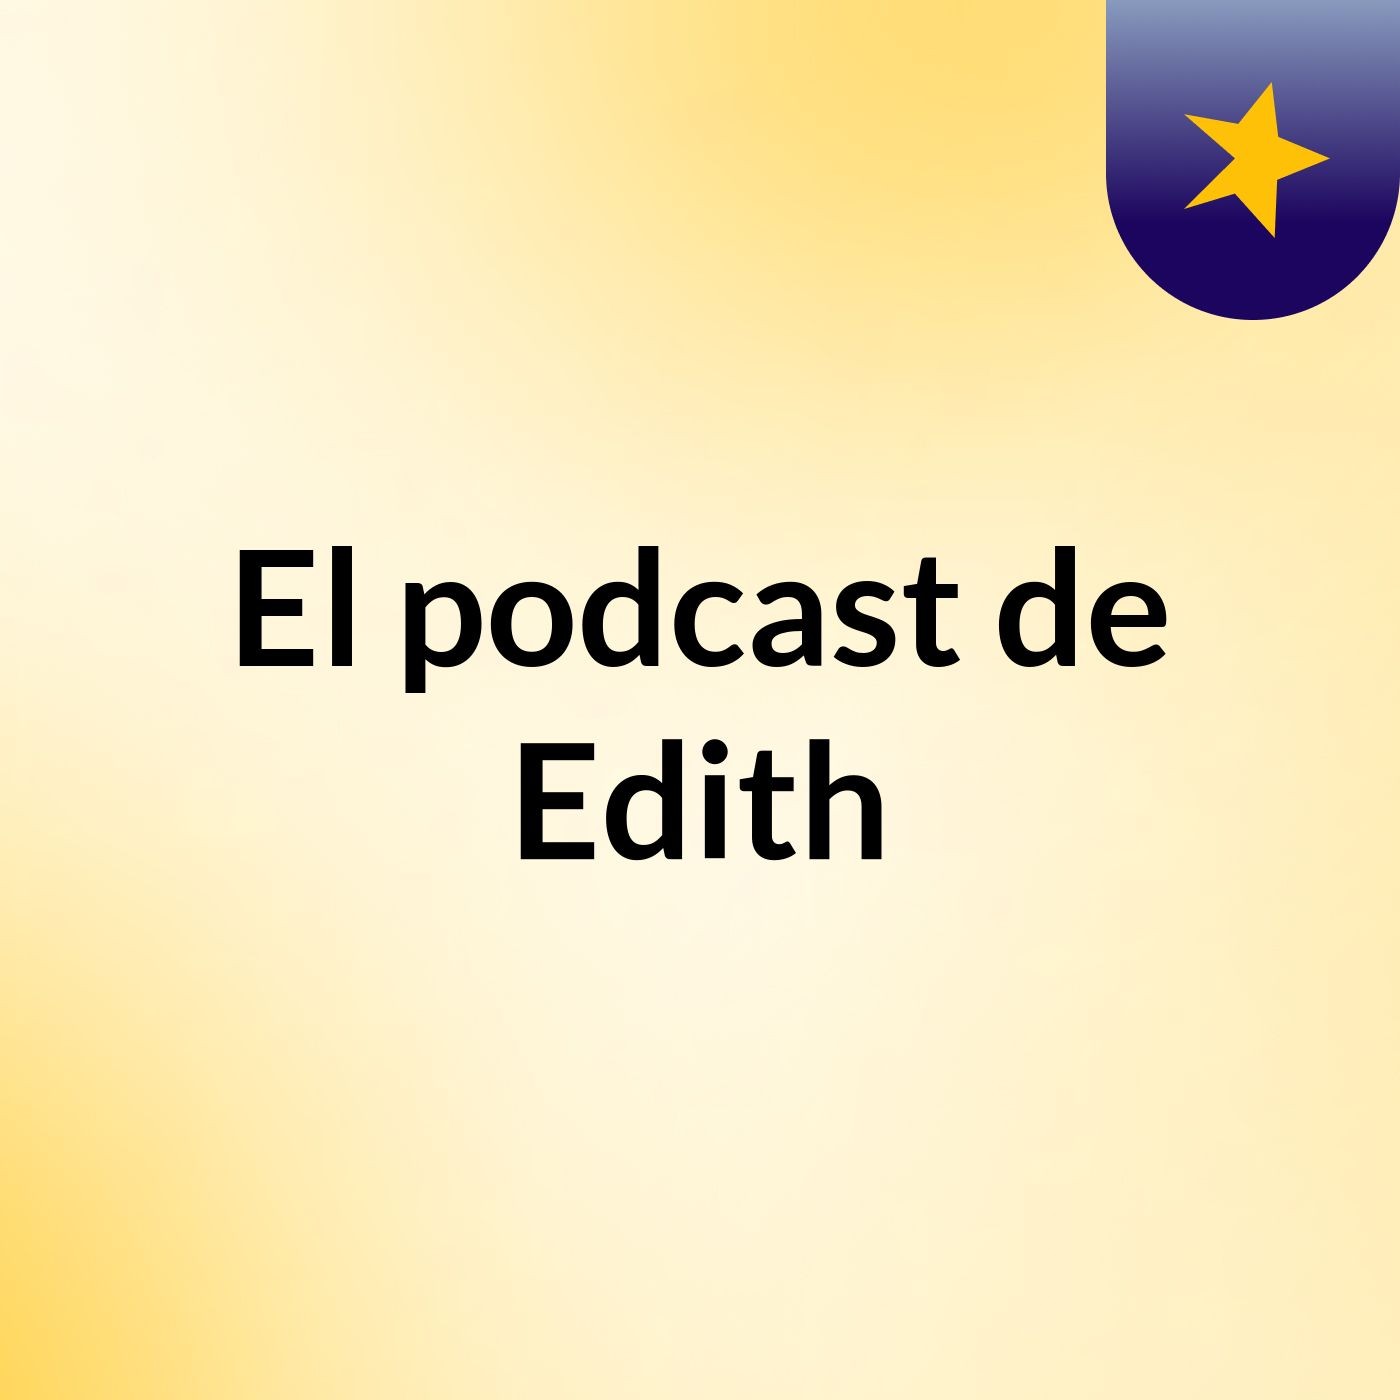 El podcast de Edith